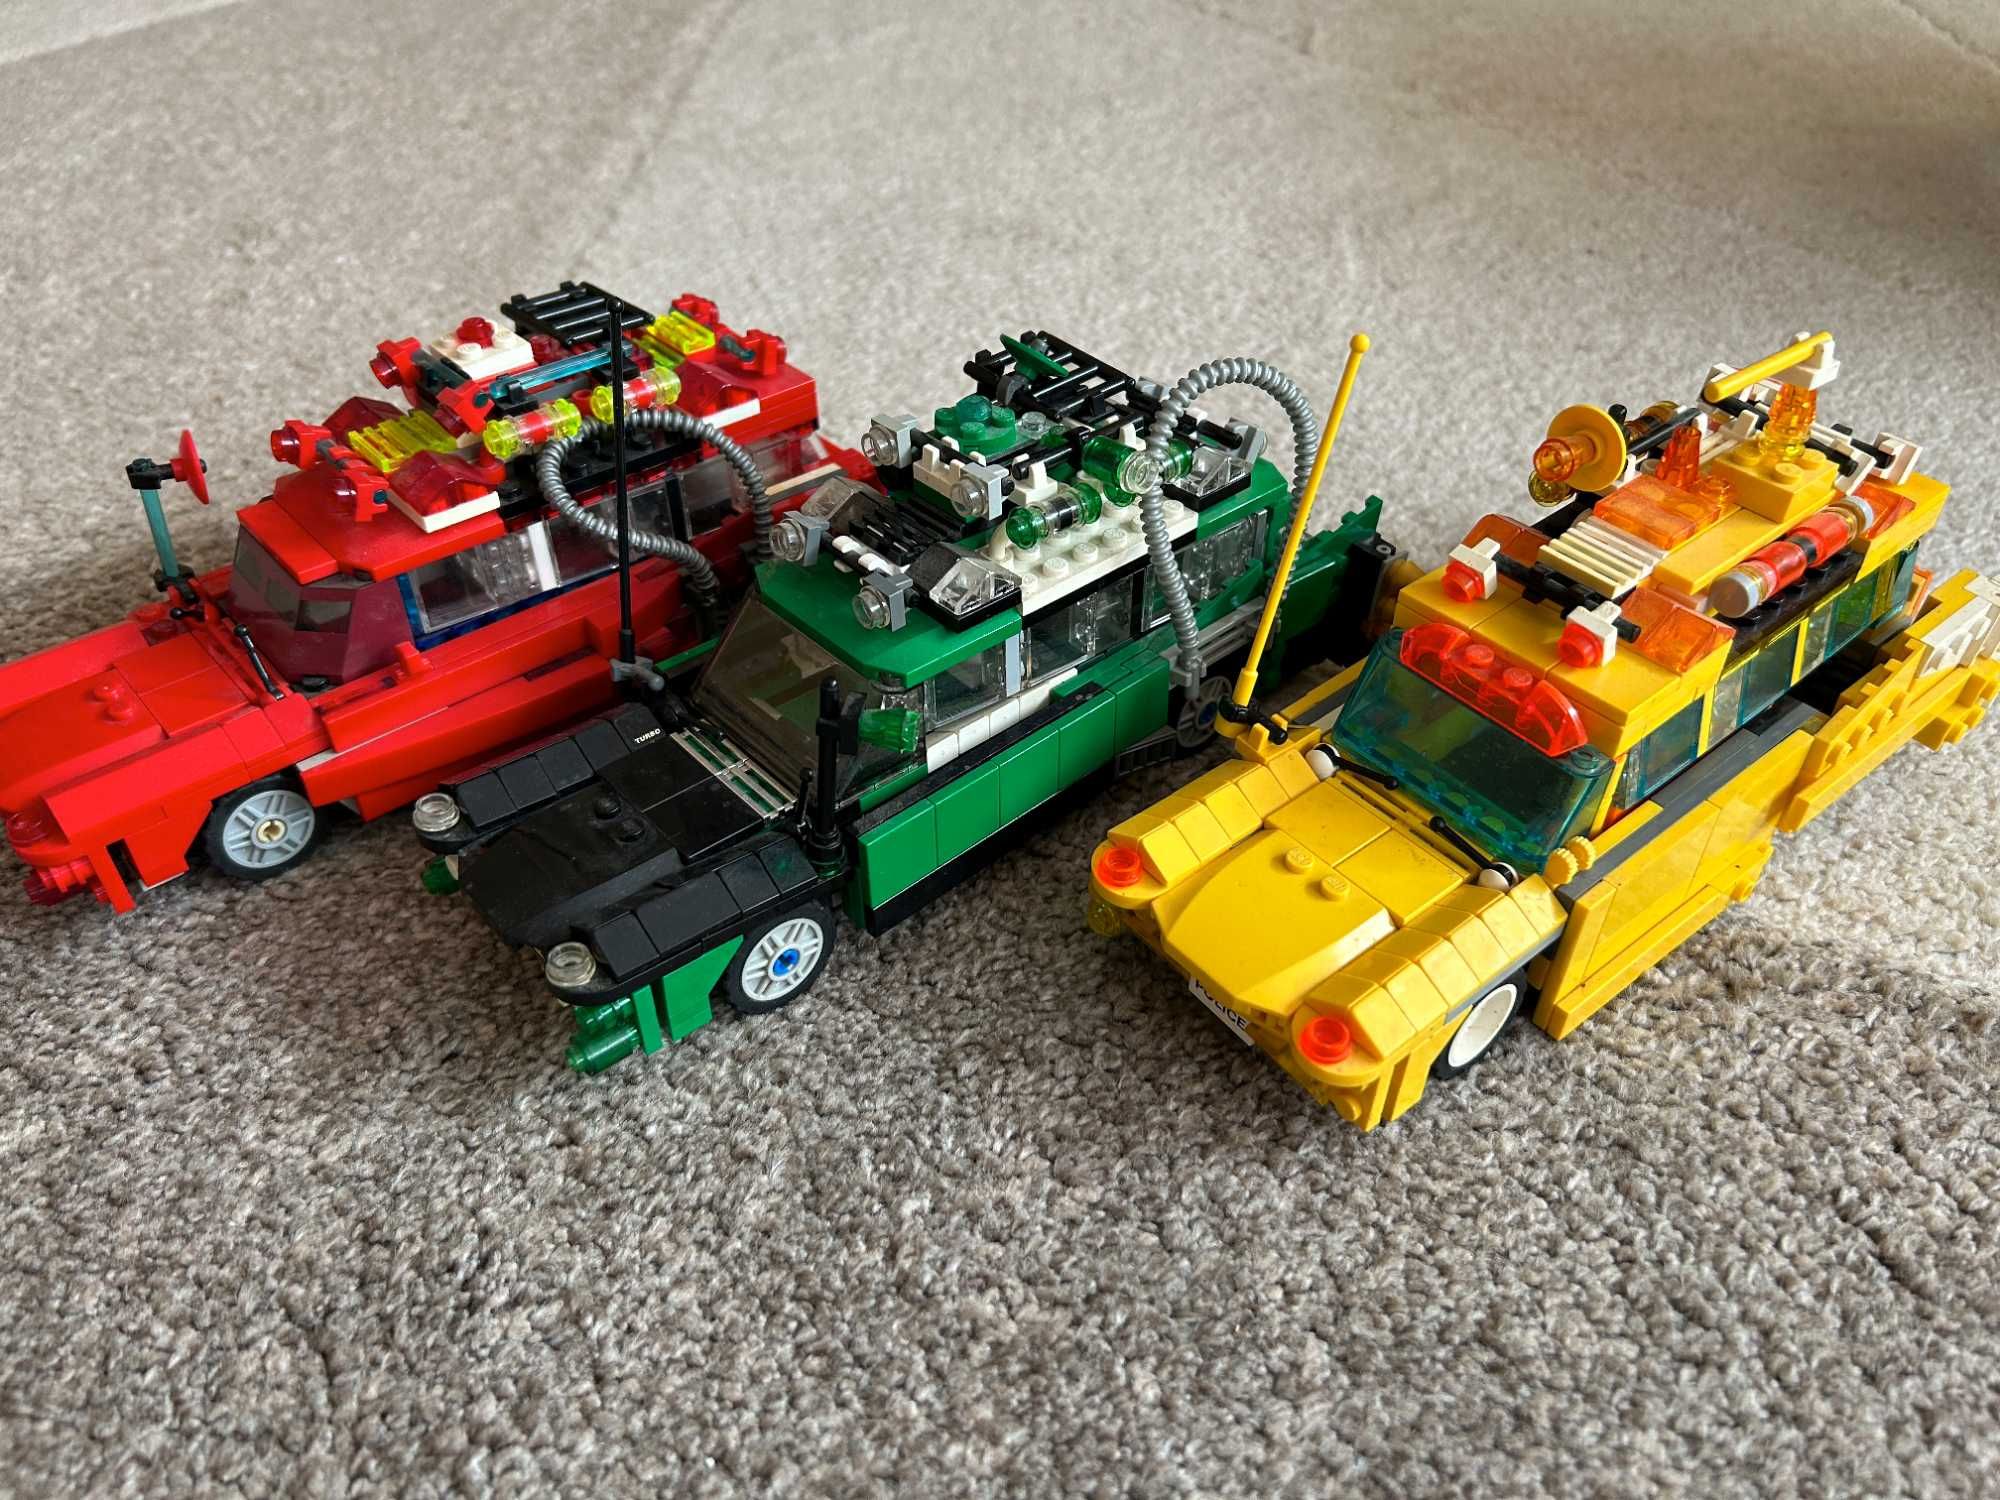 Lego 3 samochody wzorowane na zestawie Ghostbusters 21108